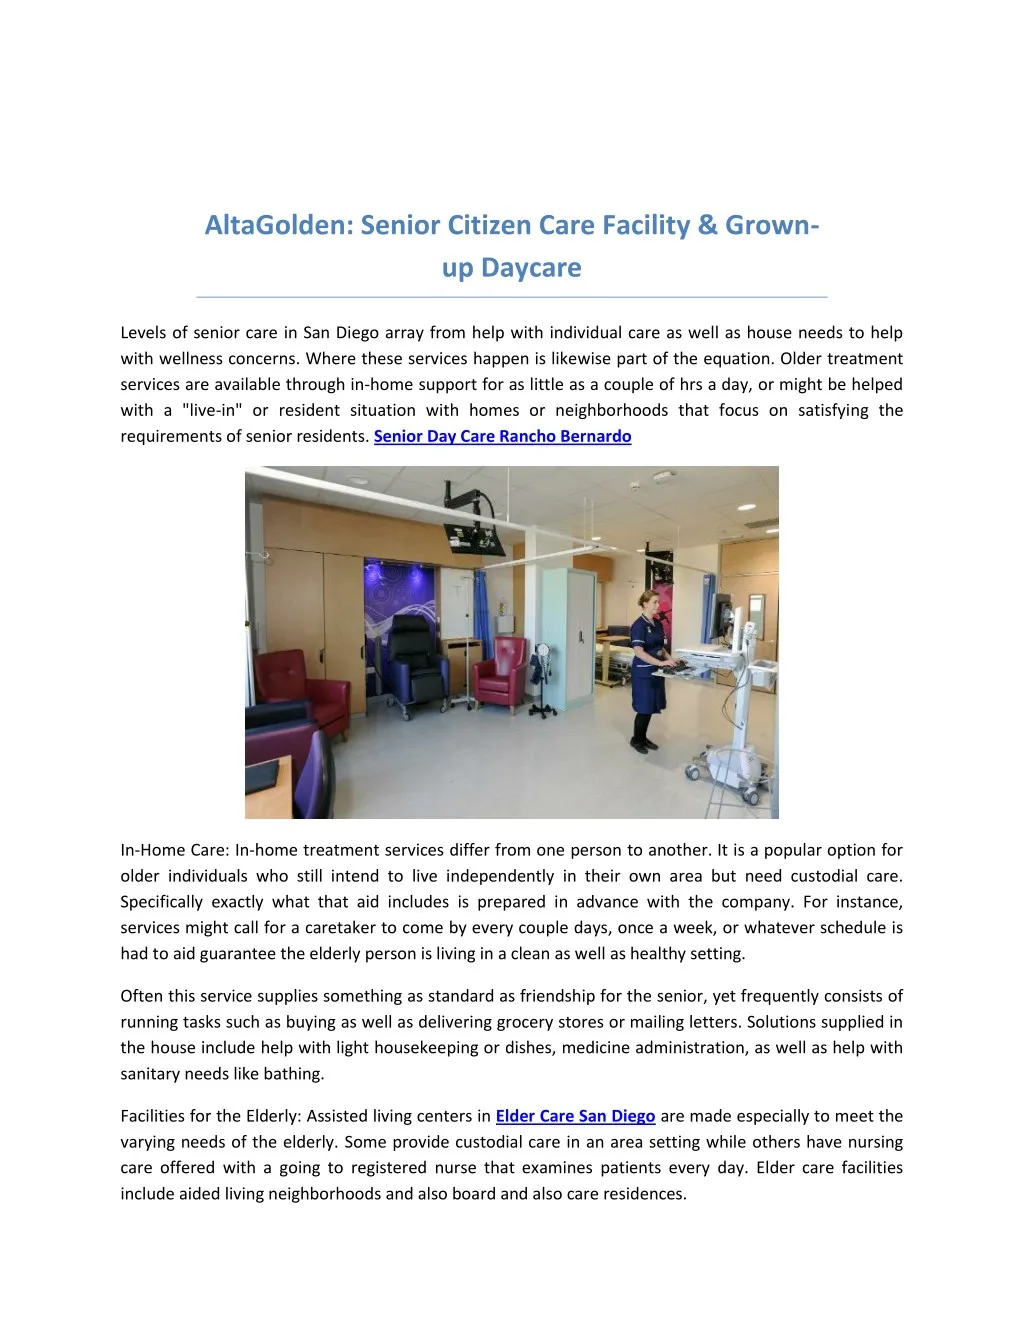 altagolden senior citizen care facility grown